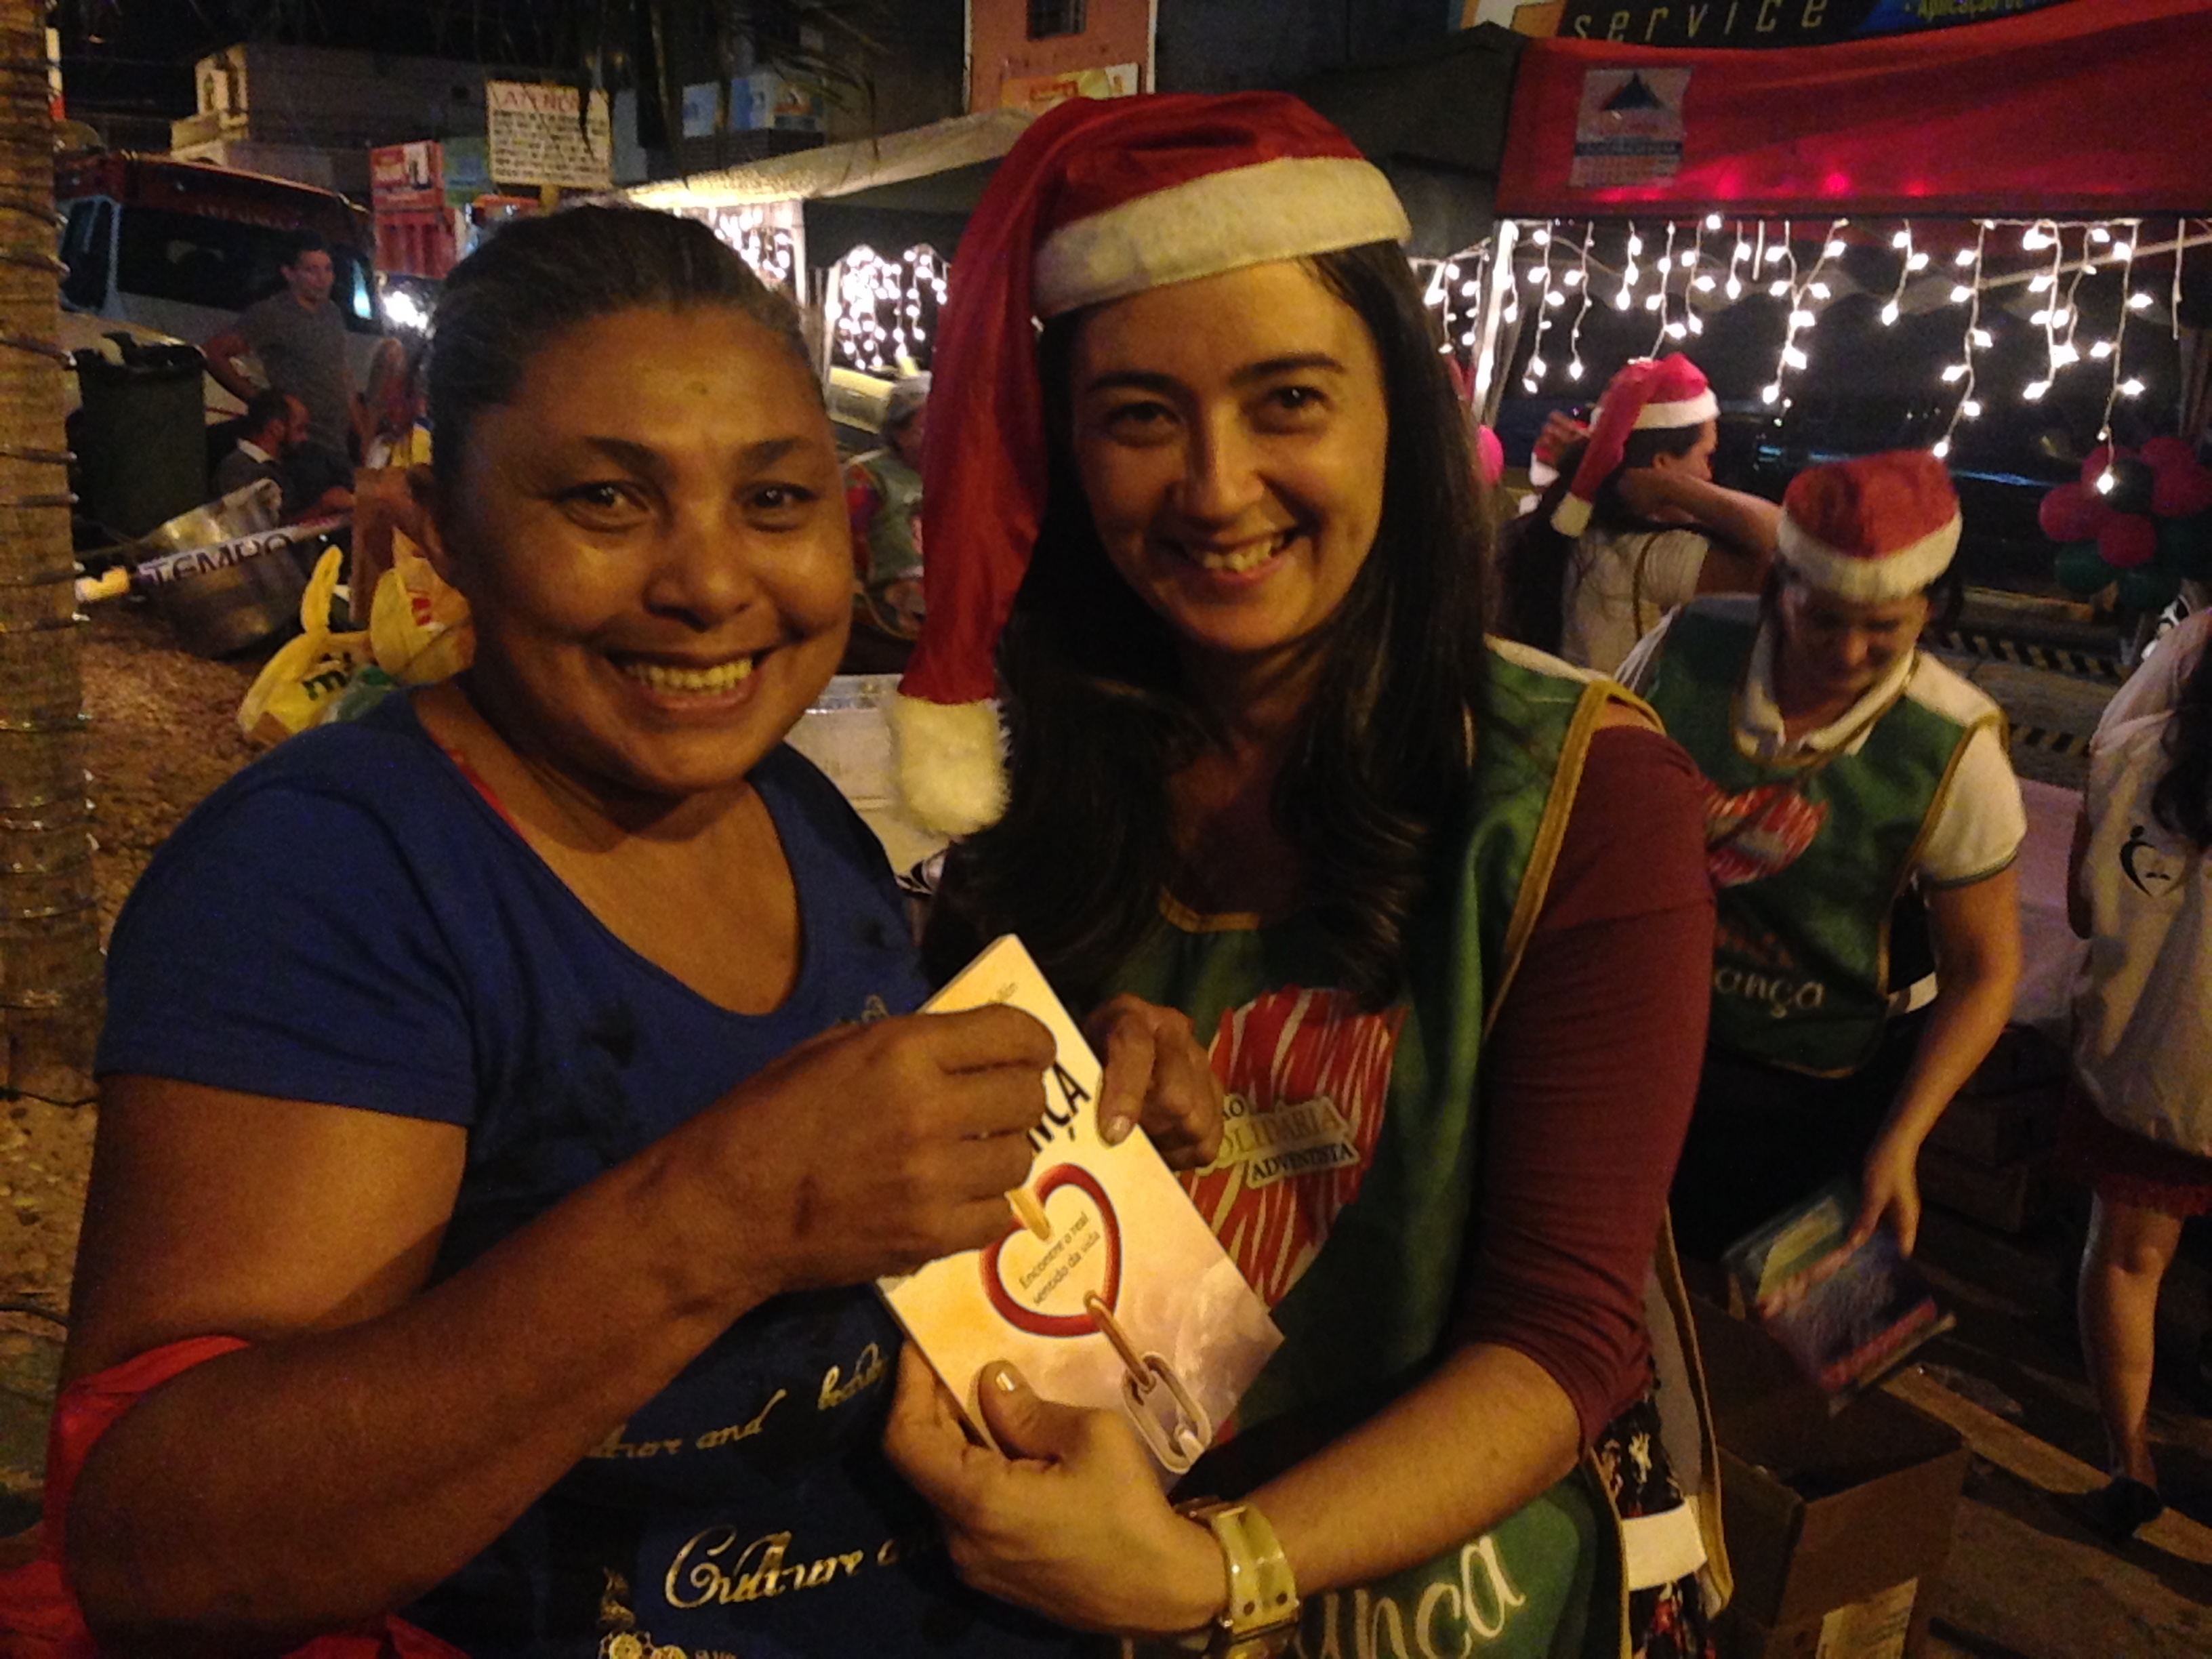 Ceia-de-Natal-Solidaria-alegra-noite-de-centenas-de-pessoas6